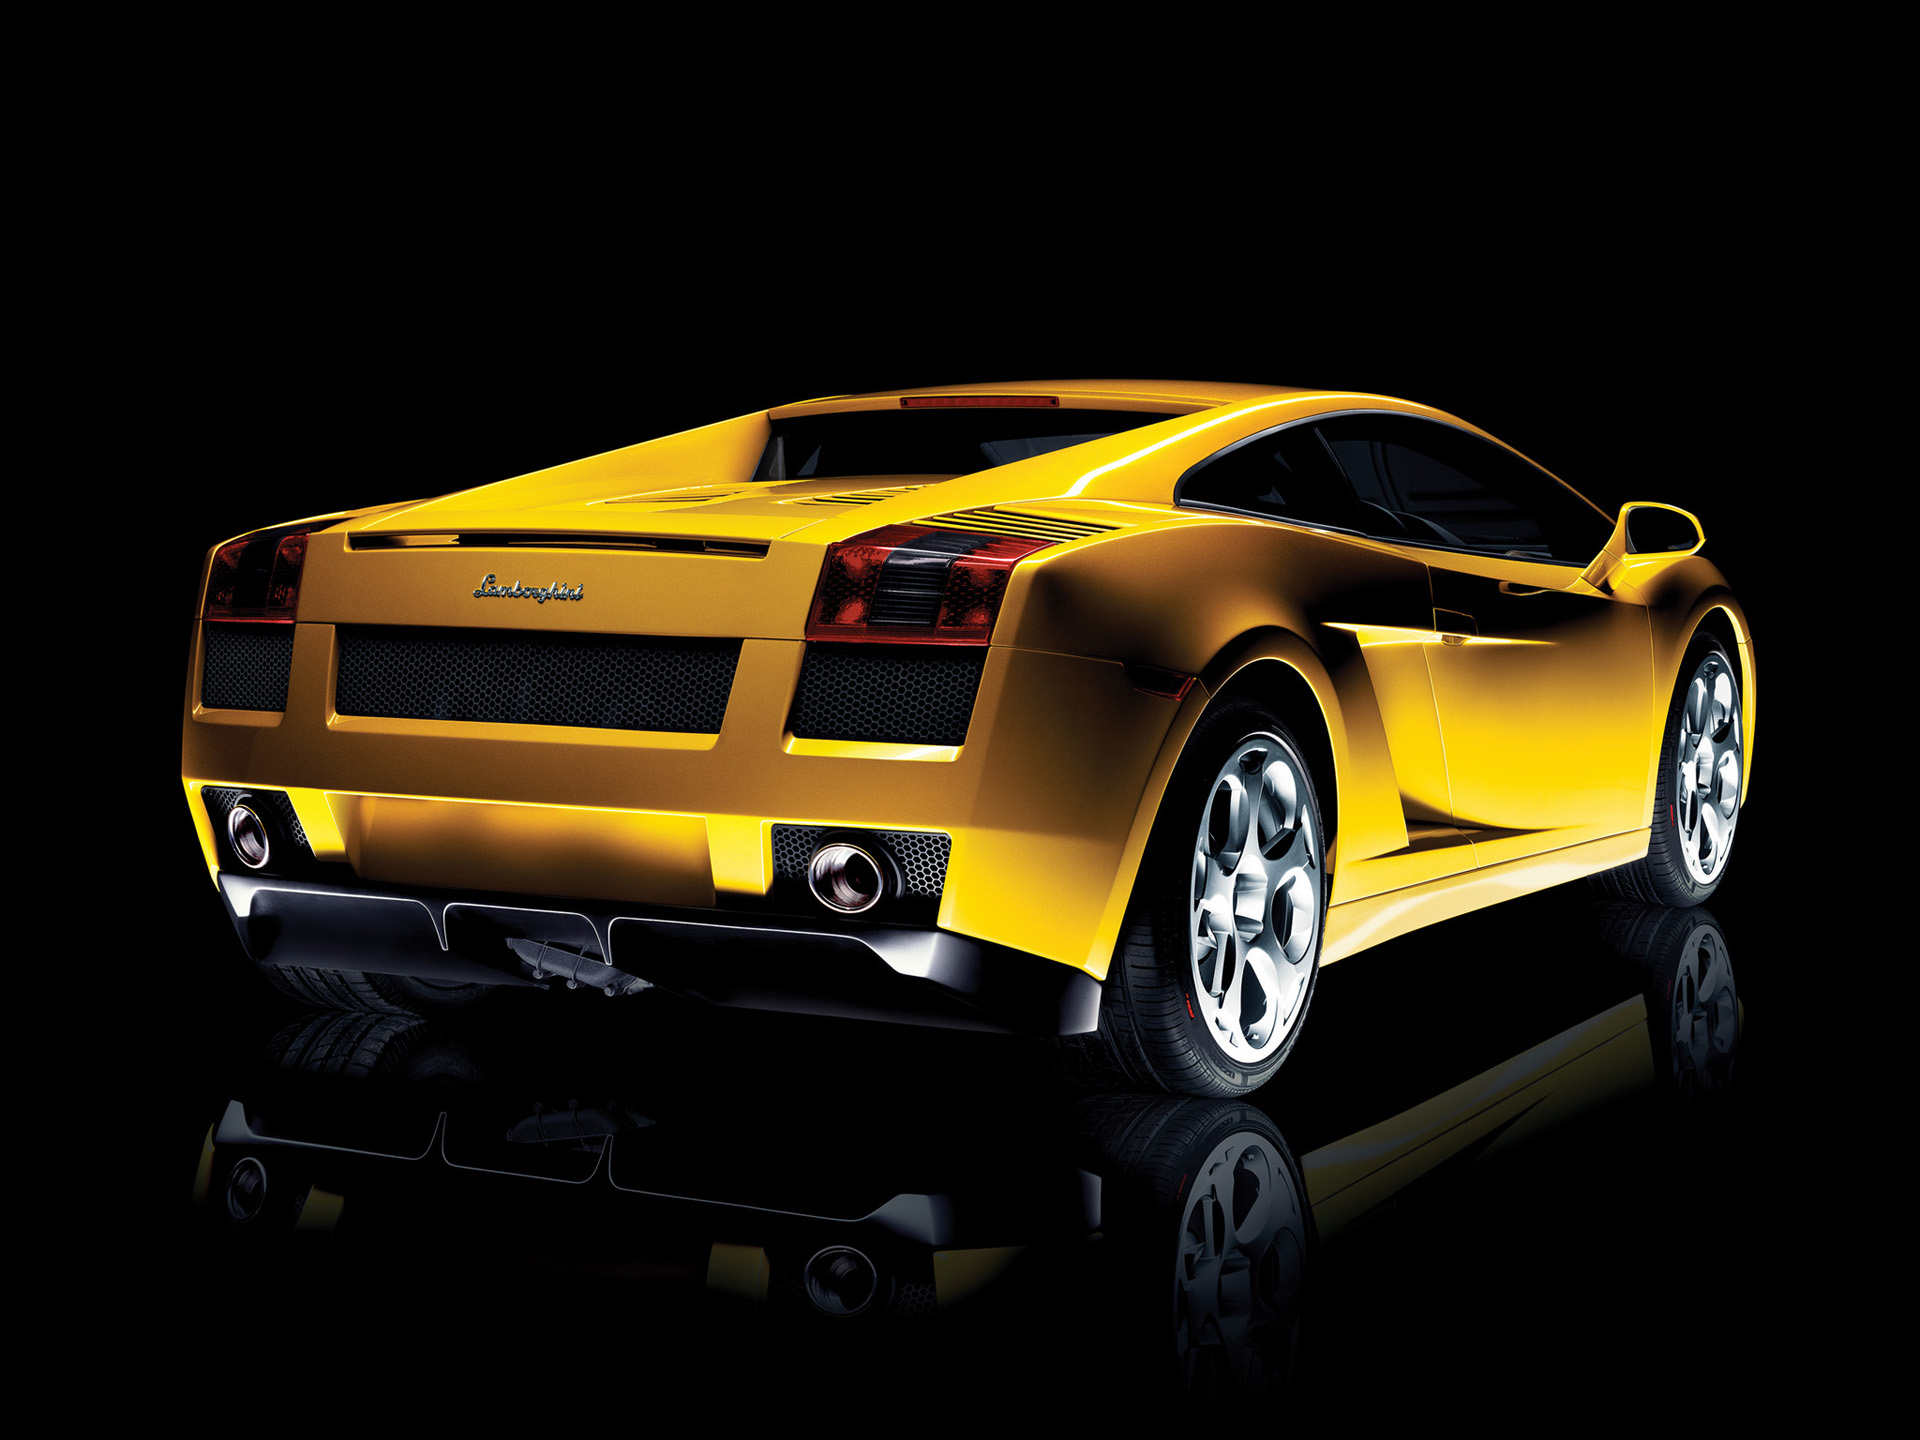  2003 Lamborghini Gallardo Wallpaper.